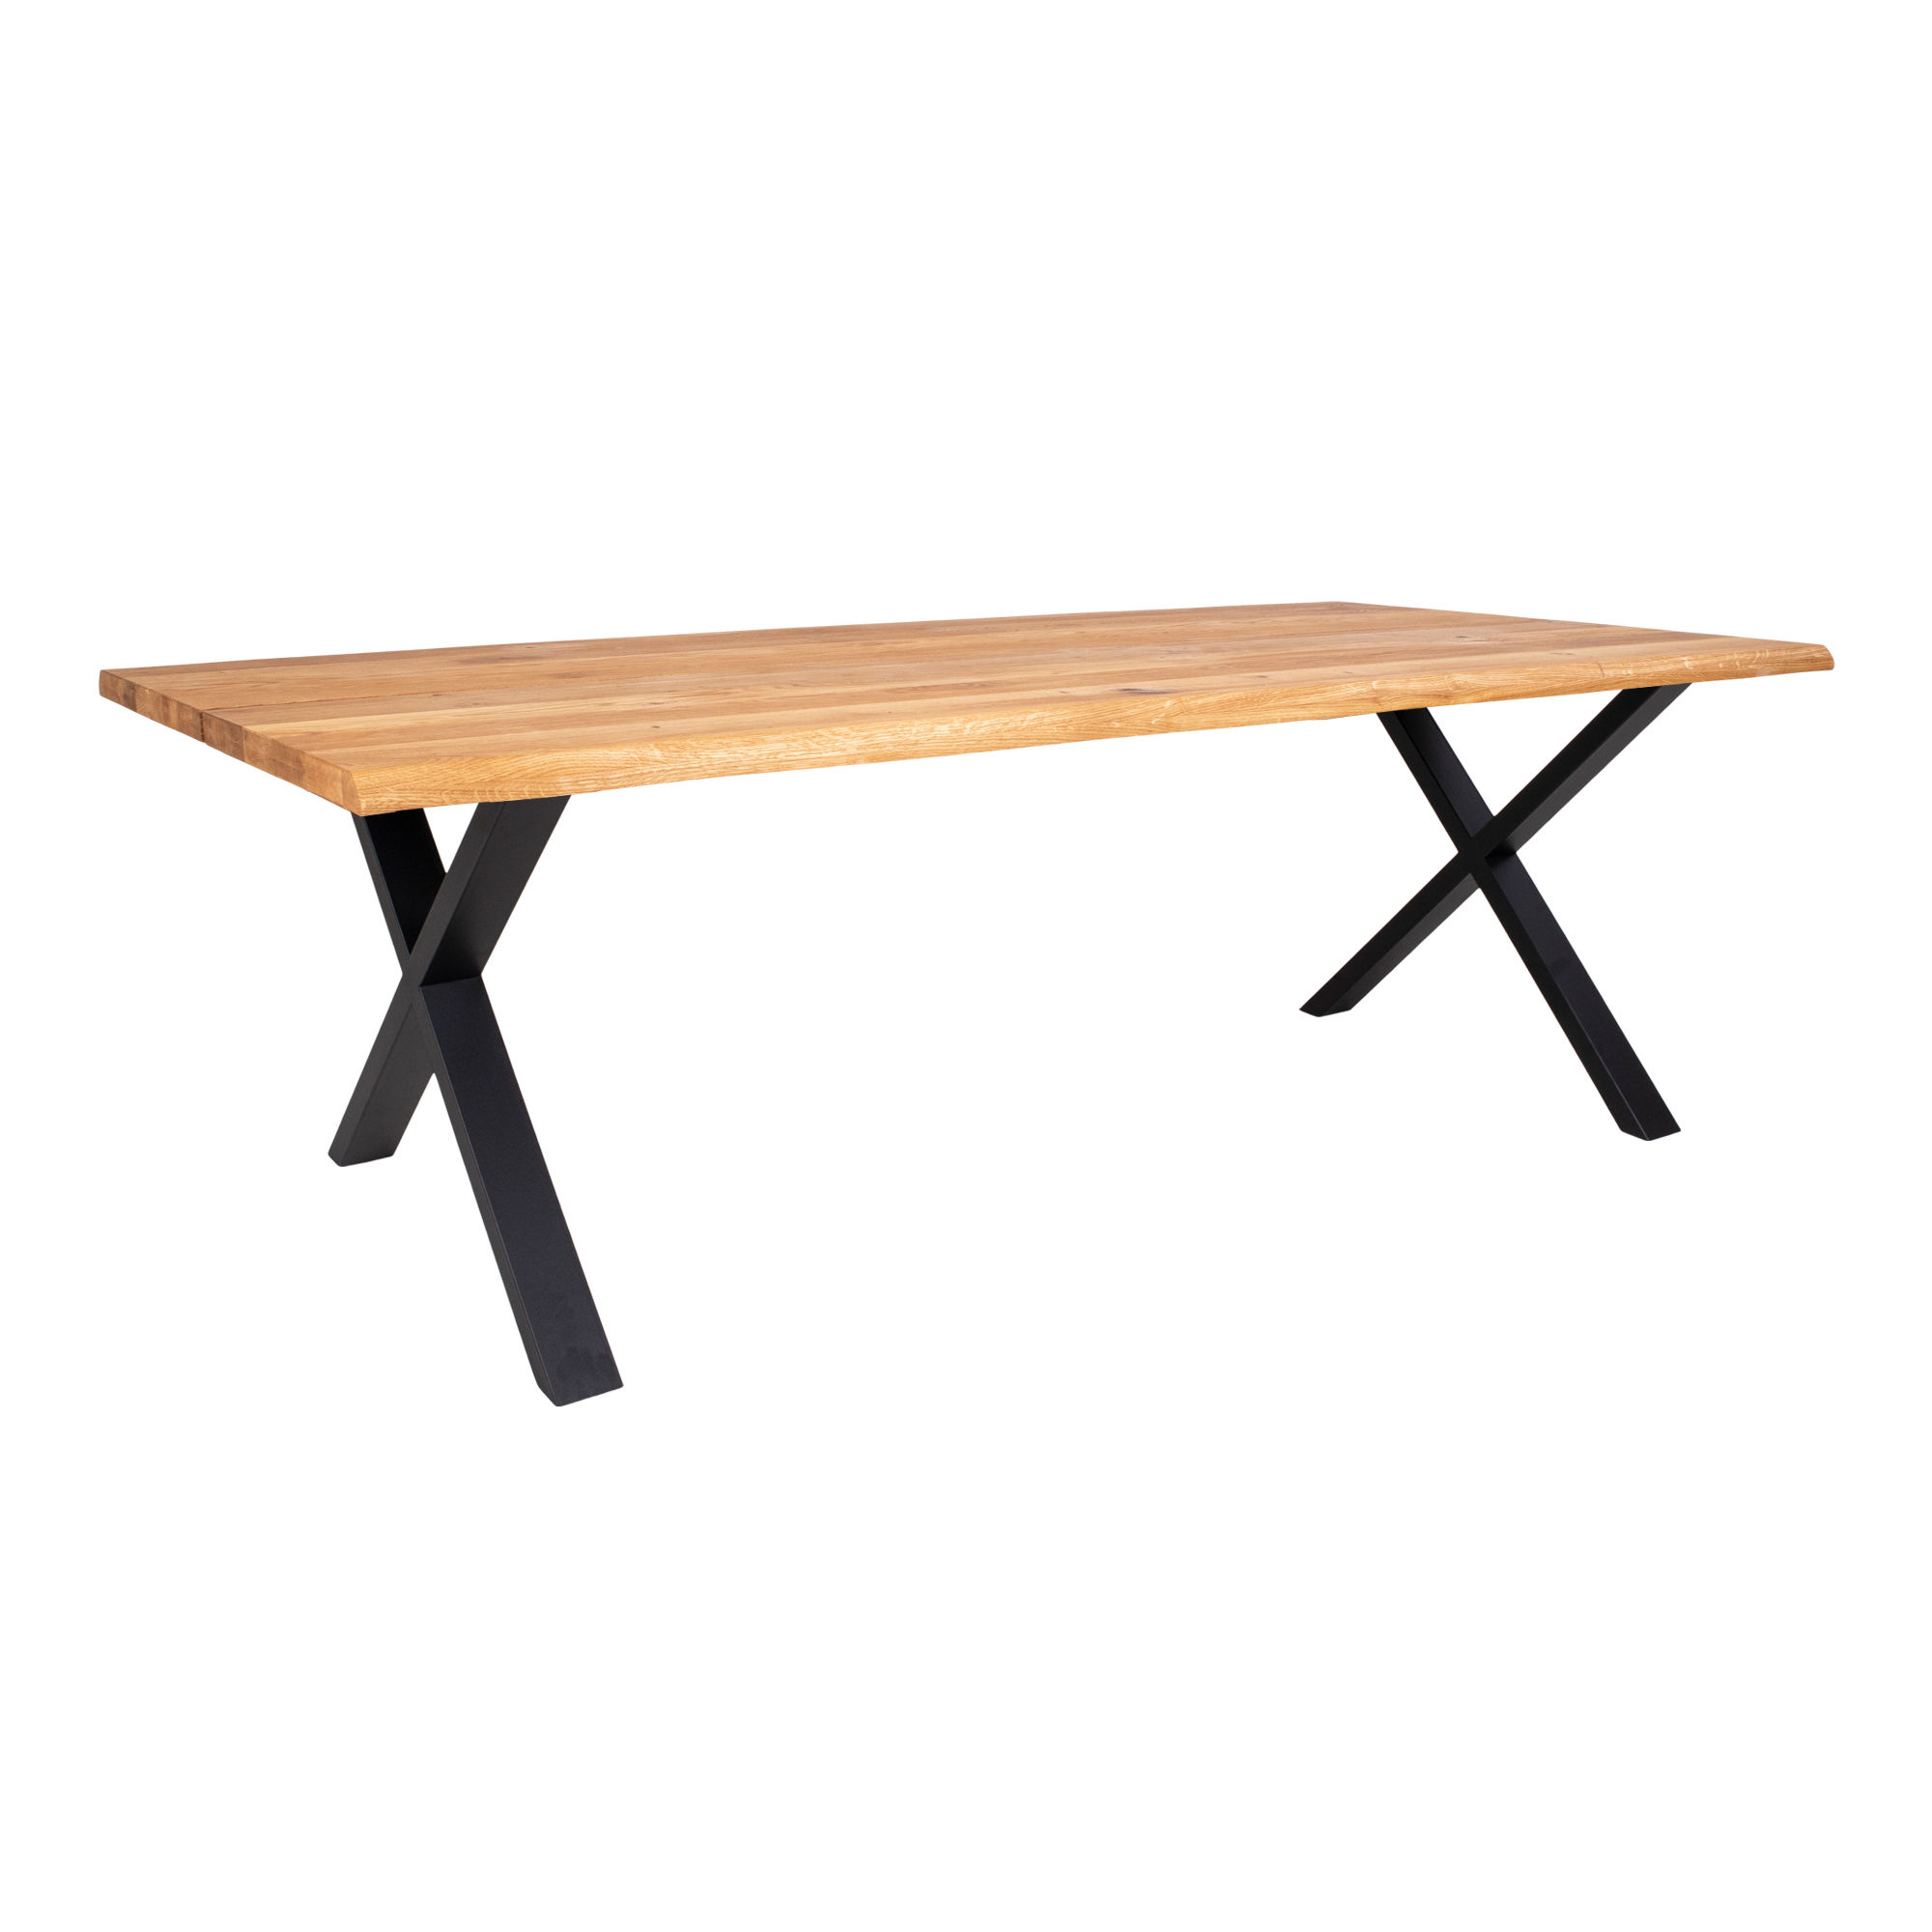 #3 - Juva - Spisebord i olieret  eg, 95 x 240 cm, med eller uden tillægsplader Med 2 tillægsplader